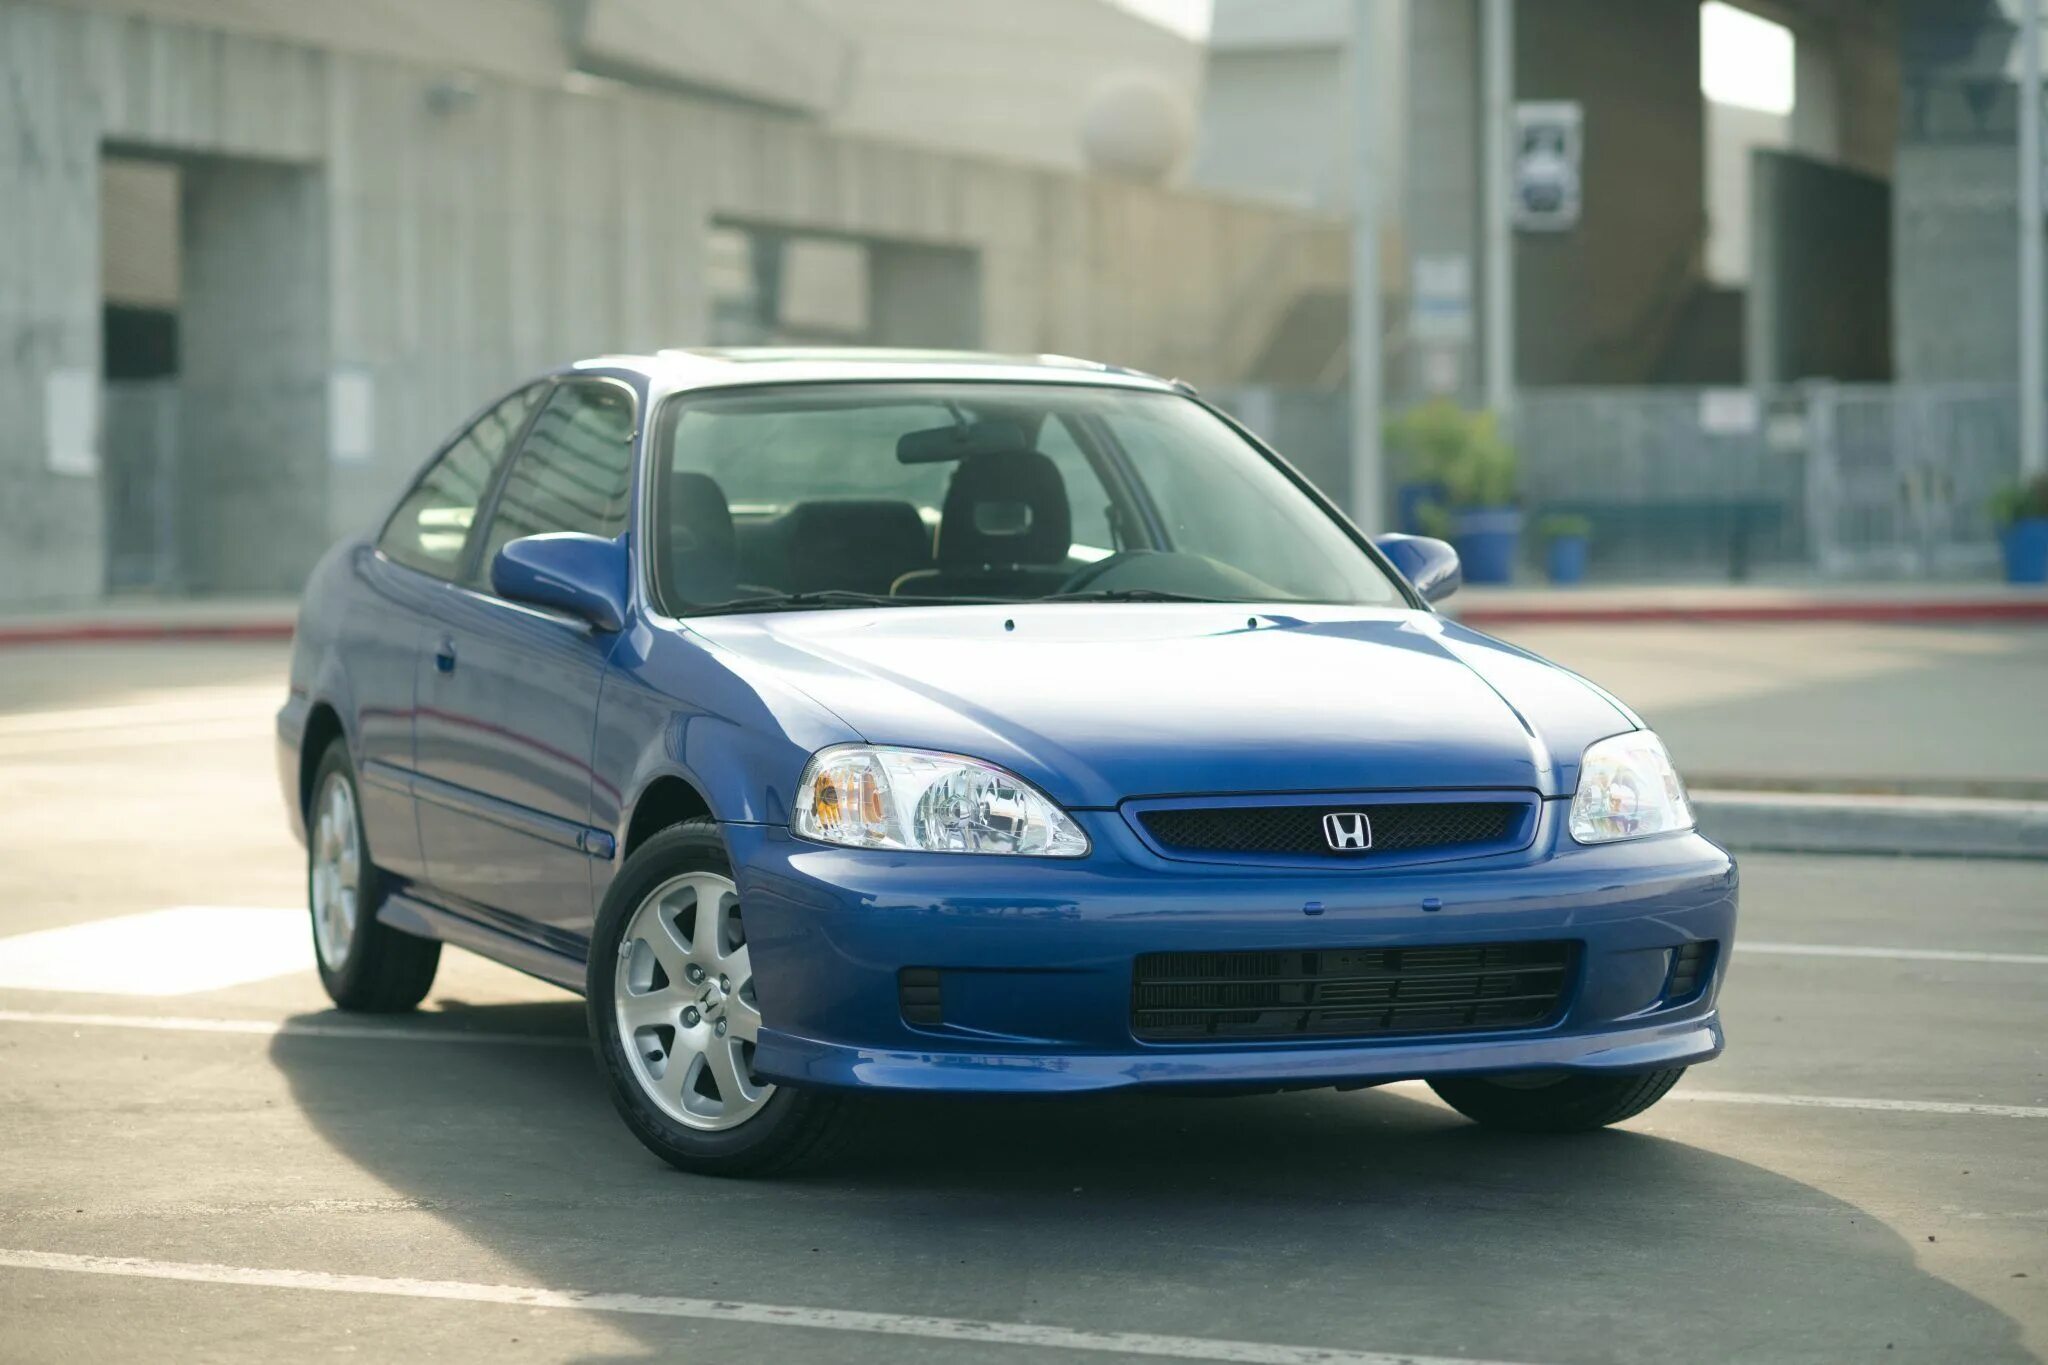 Honda Civic Coupe 1999. Хонда Civic 1999. Honda Civic si Coupe 1999. Honda Civic si 1999. Honda civic 1999